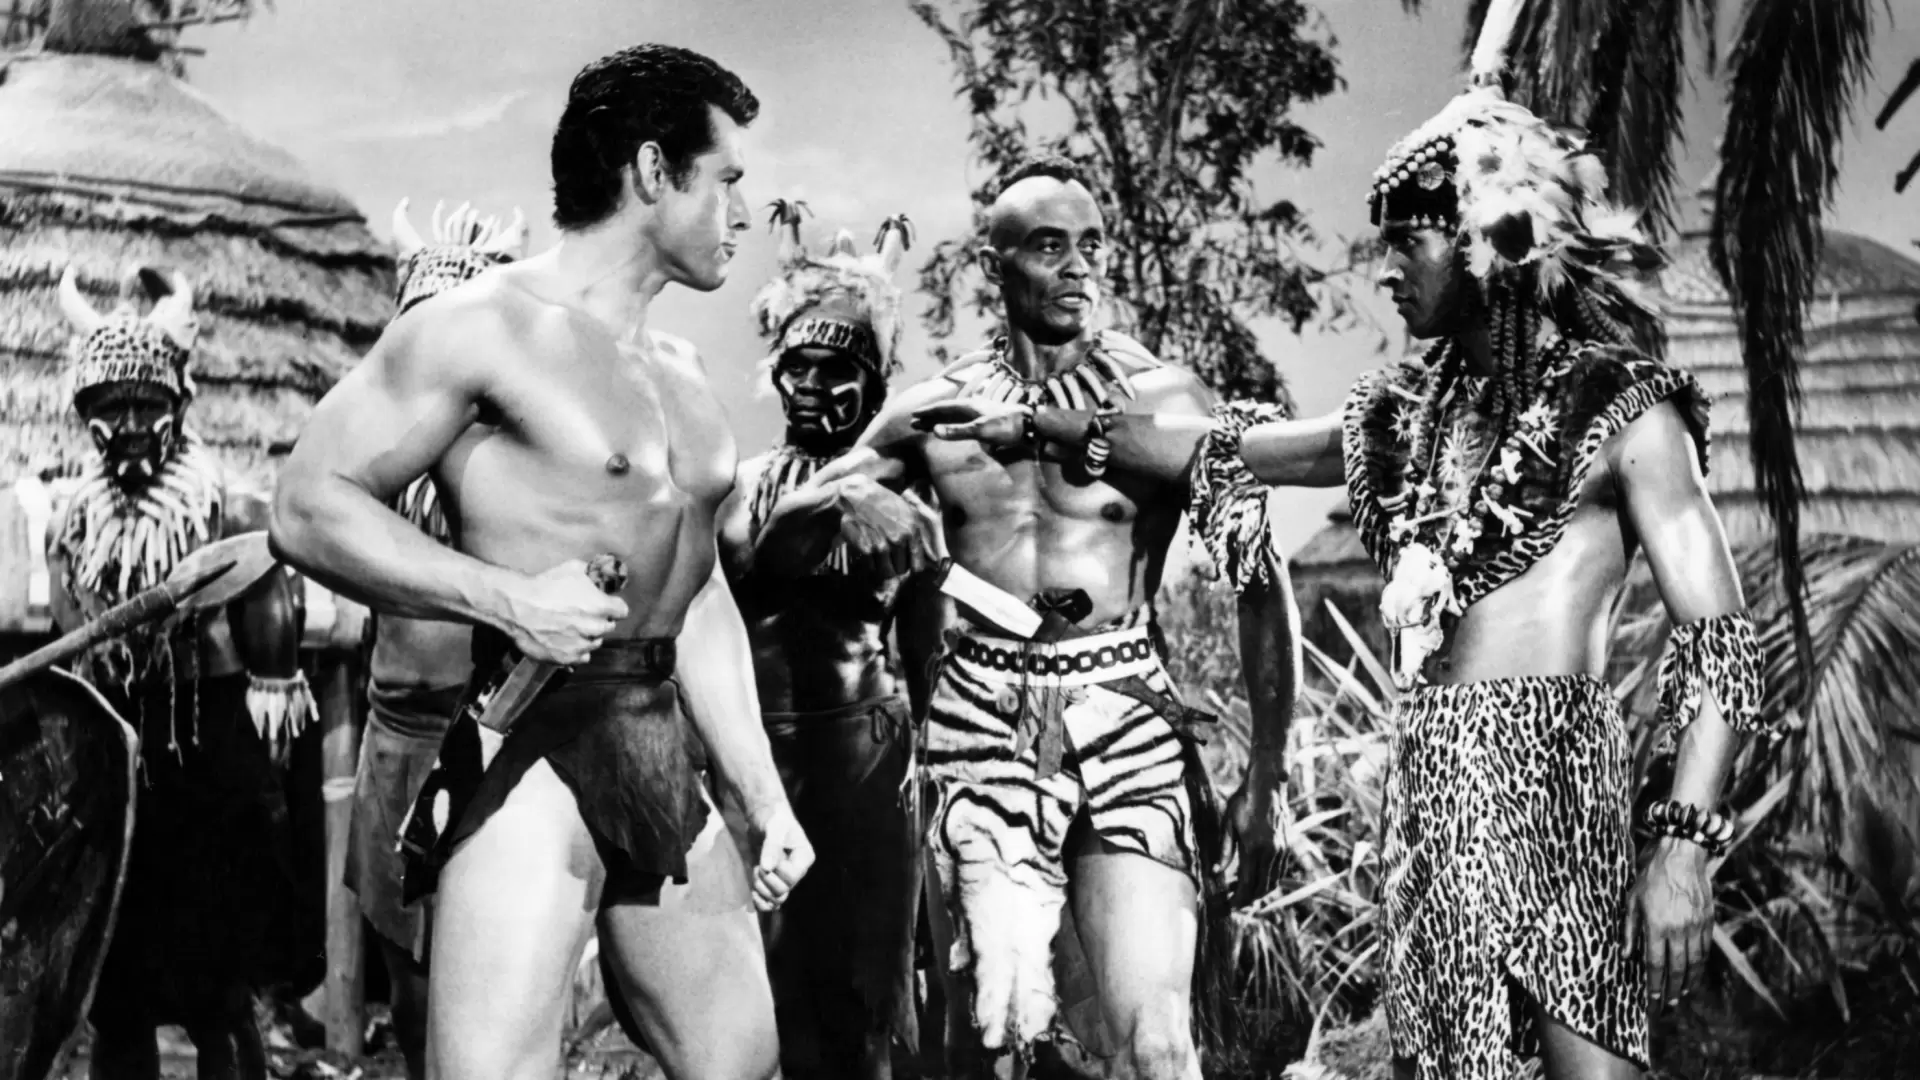 دانلود فیلم Tarzan’s Fight for Life 1958